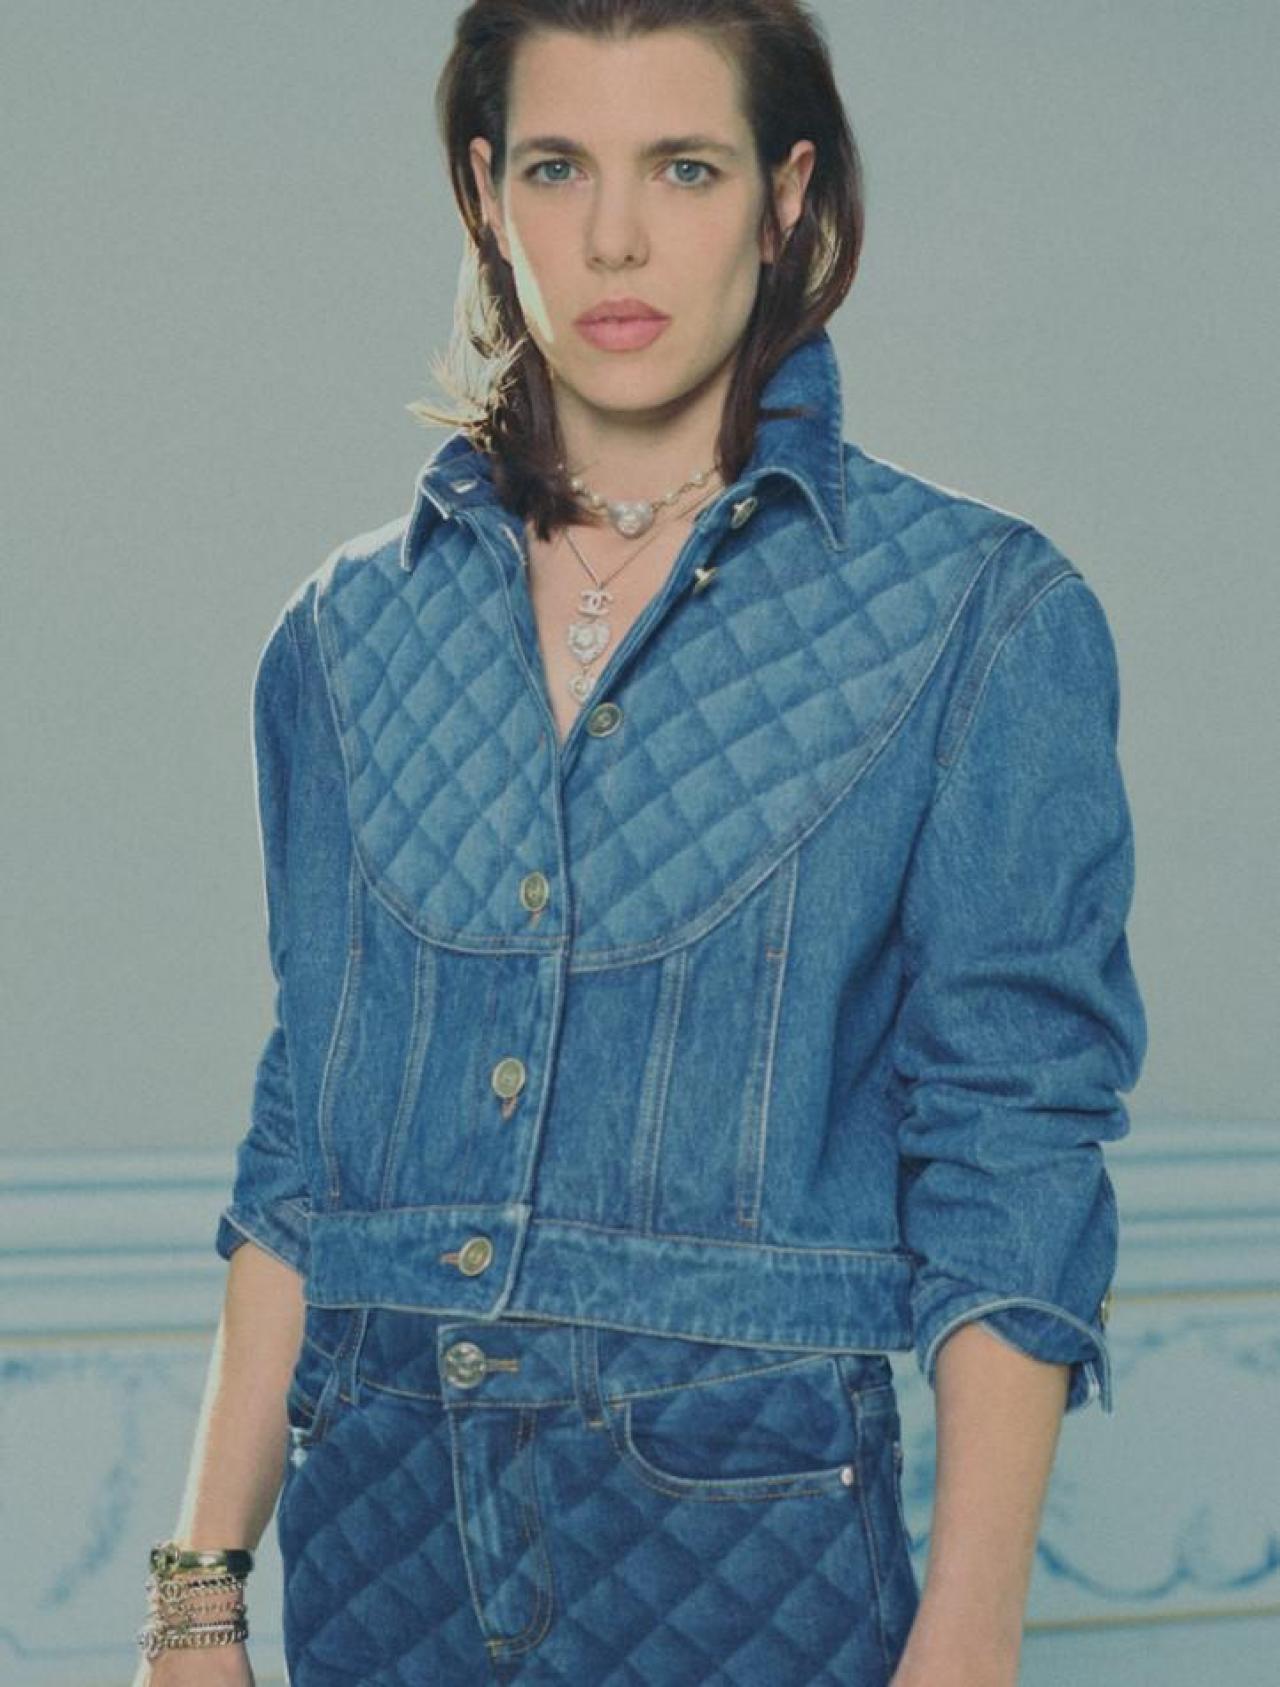 Charlotte Casiraghi in jeansoutfit van Chanel (prijs niet meegedeeld).